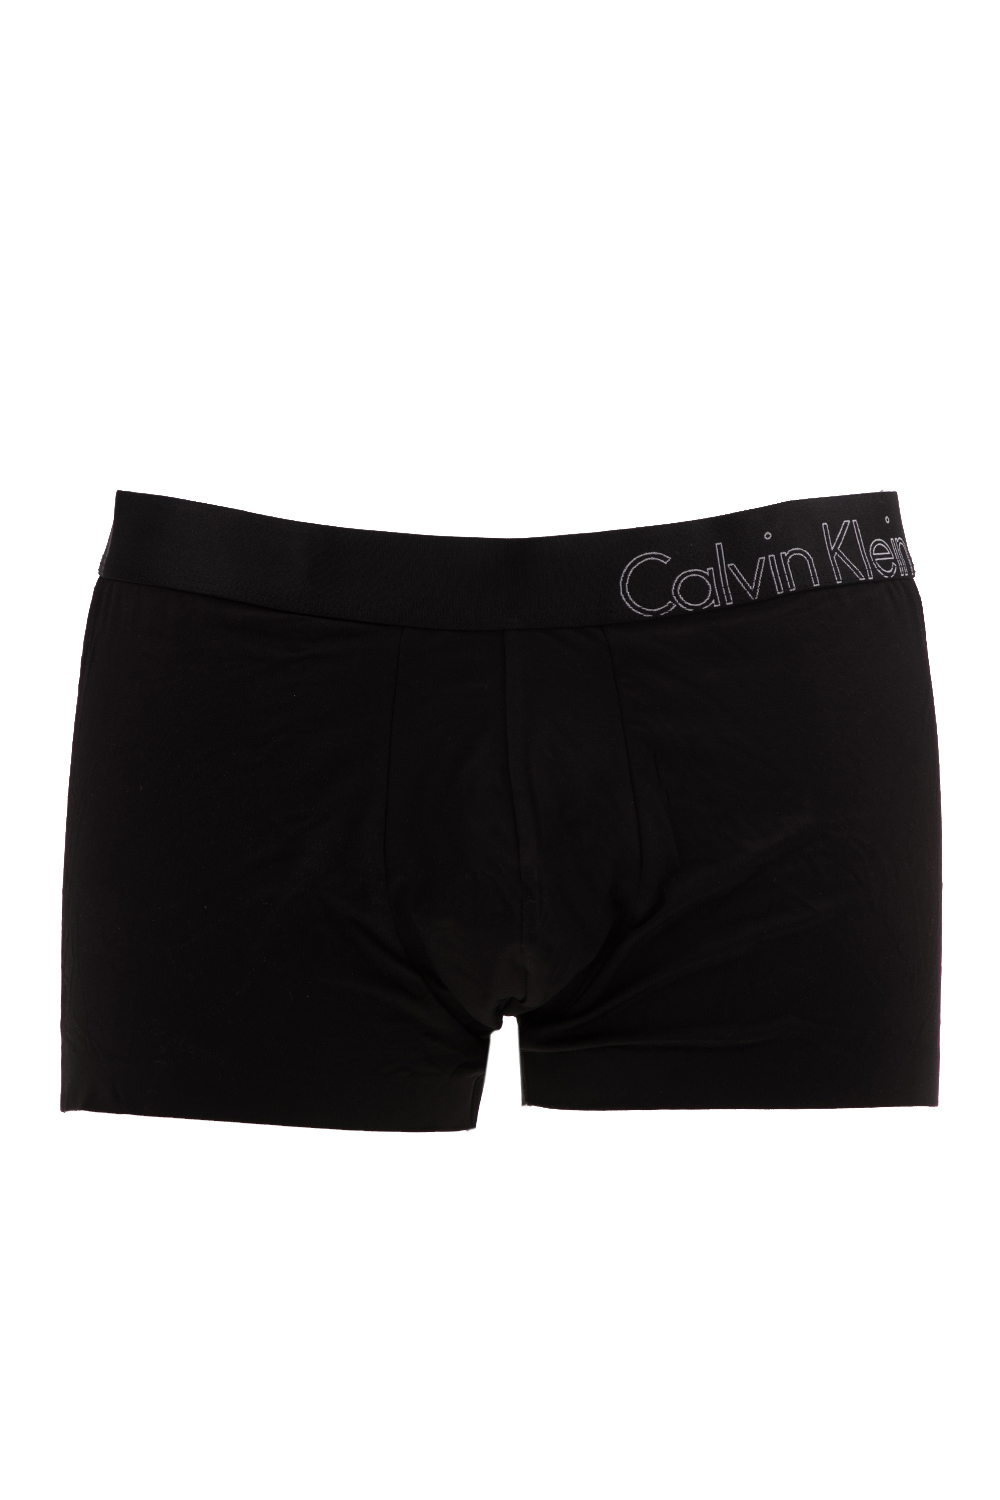 CK UNDERWEAR - Ανδρικό μποξεράκι LOW RISE TRUNK ck underwear μάυρο